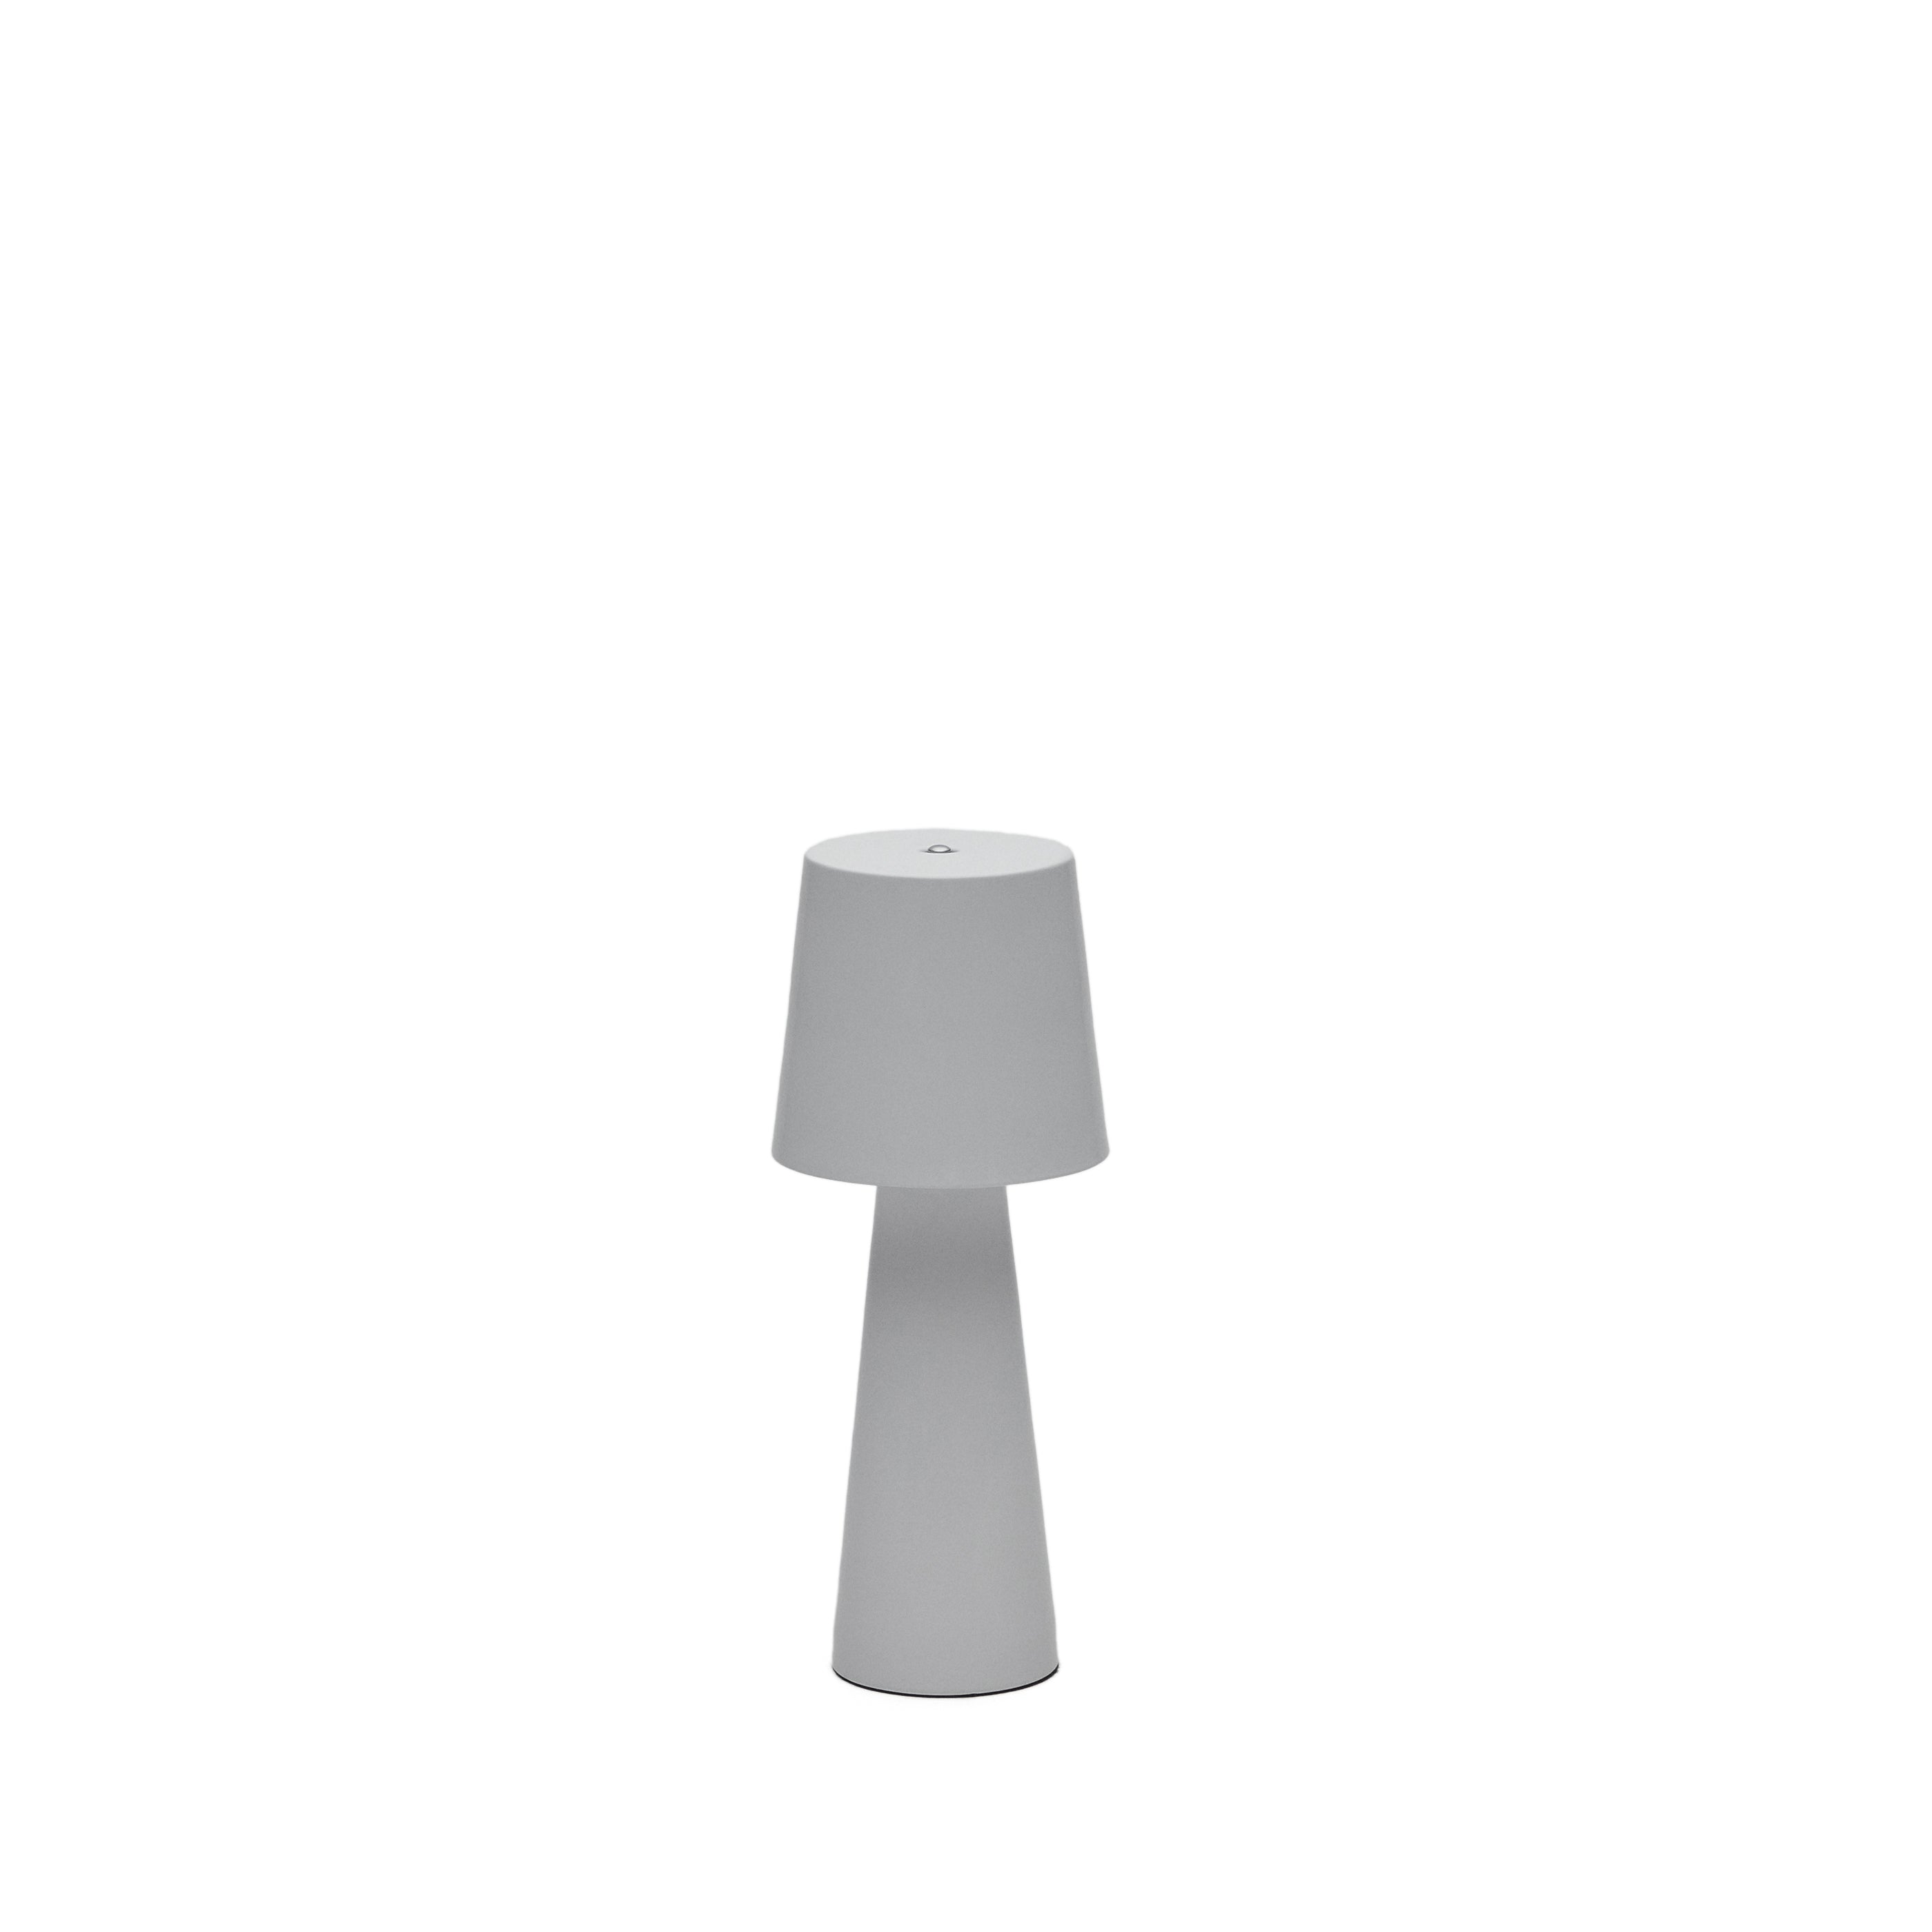 Arenys kis kültéri fém asztali lámpa szürke festett befejezéssel